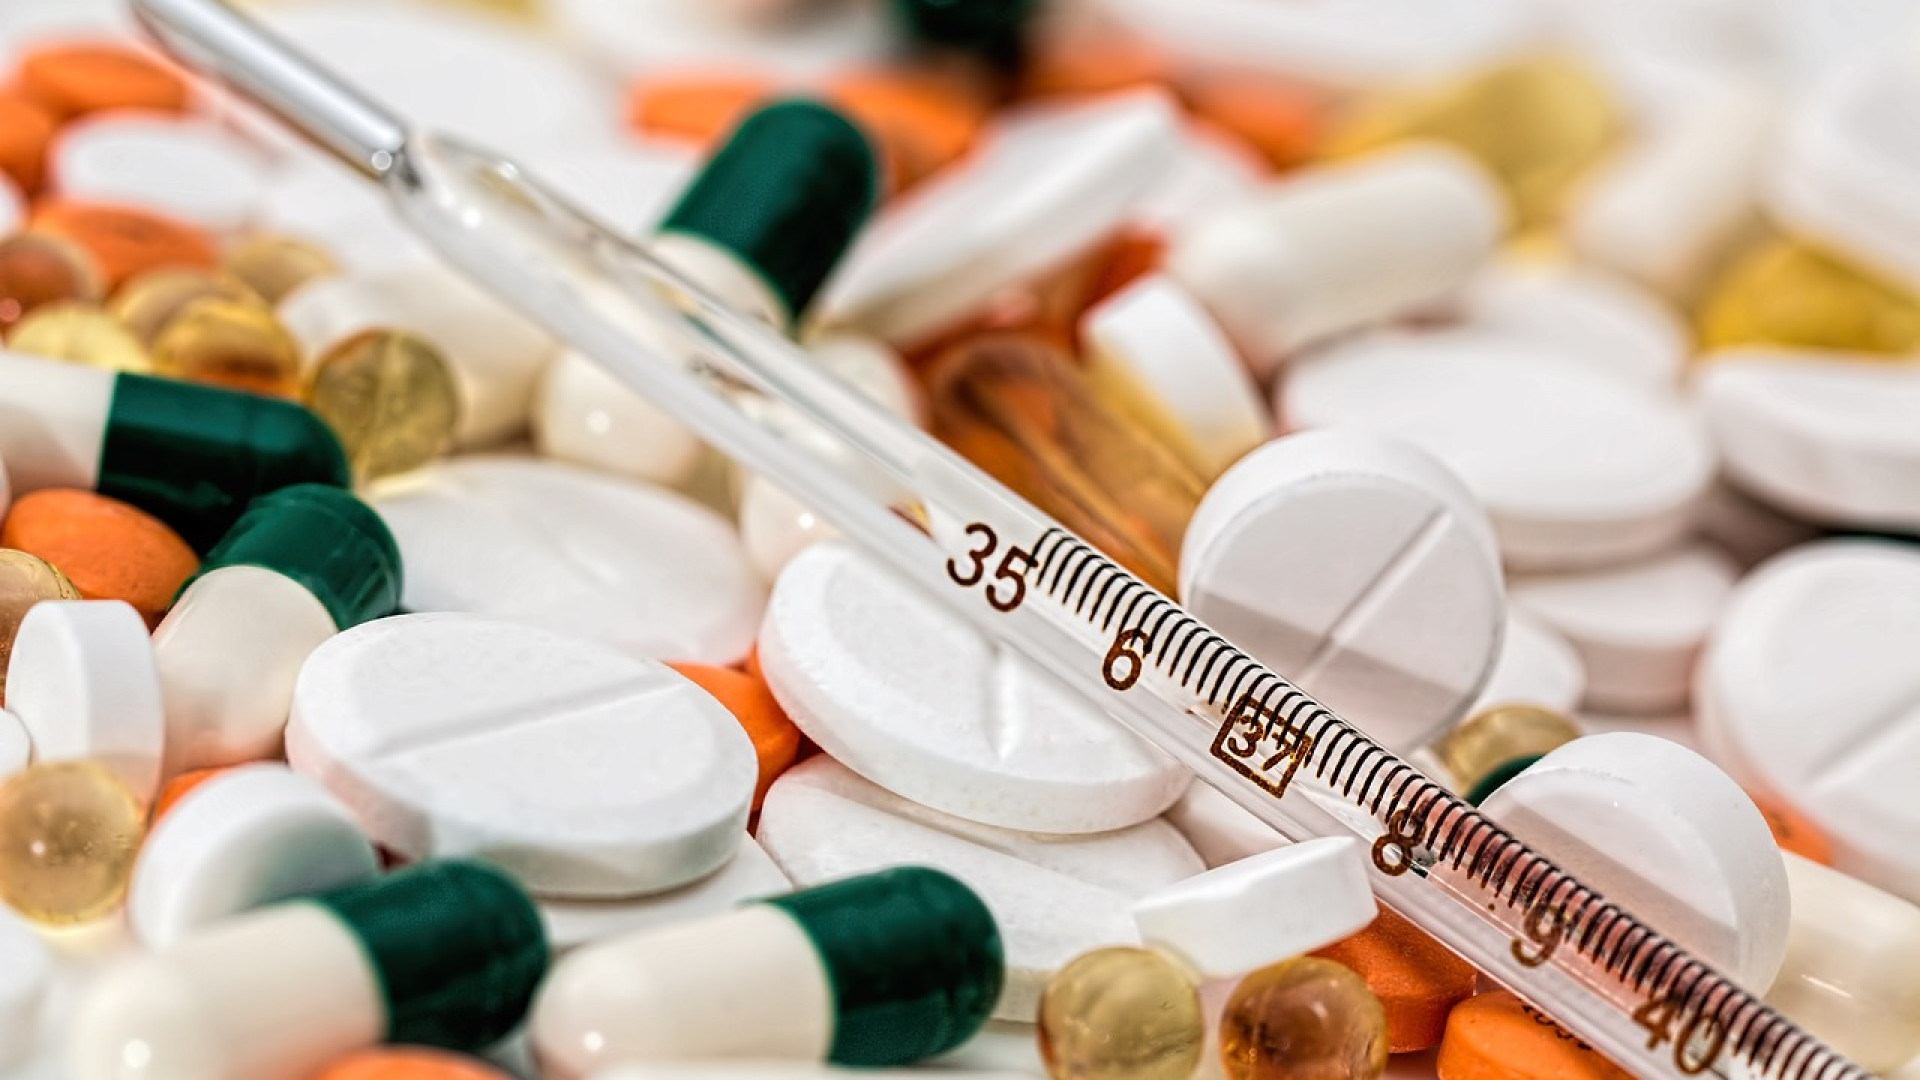 Acheter des médicaments via les pharmacies en ligne